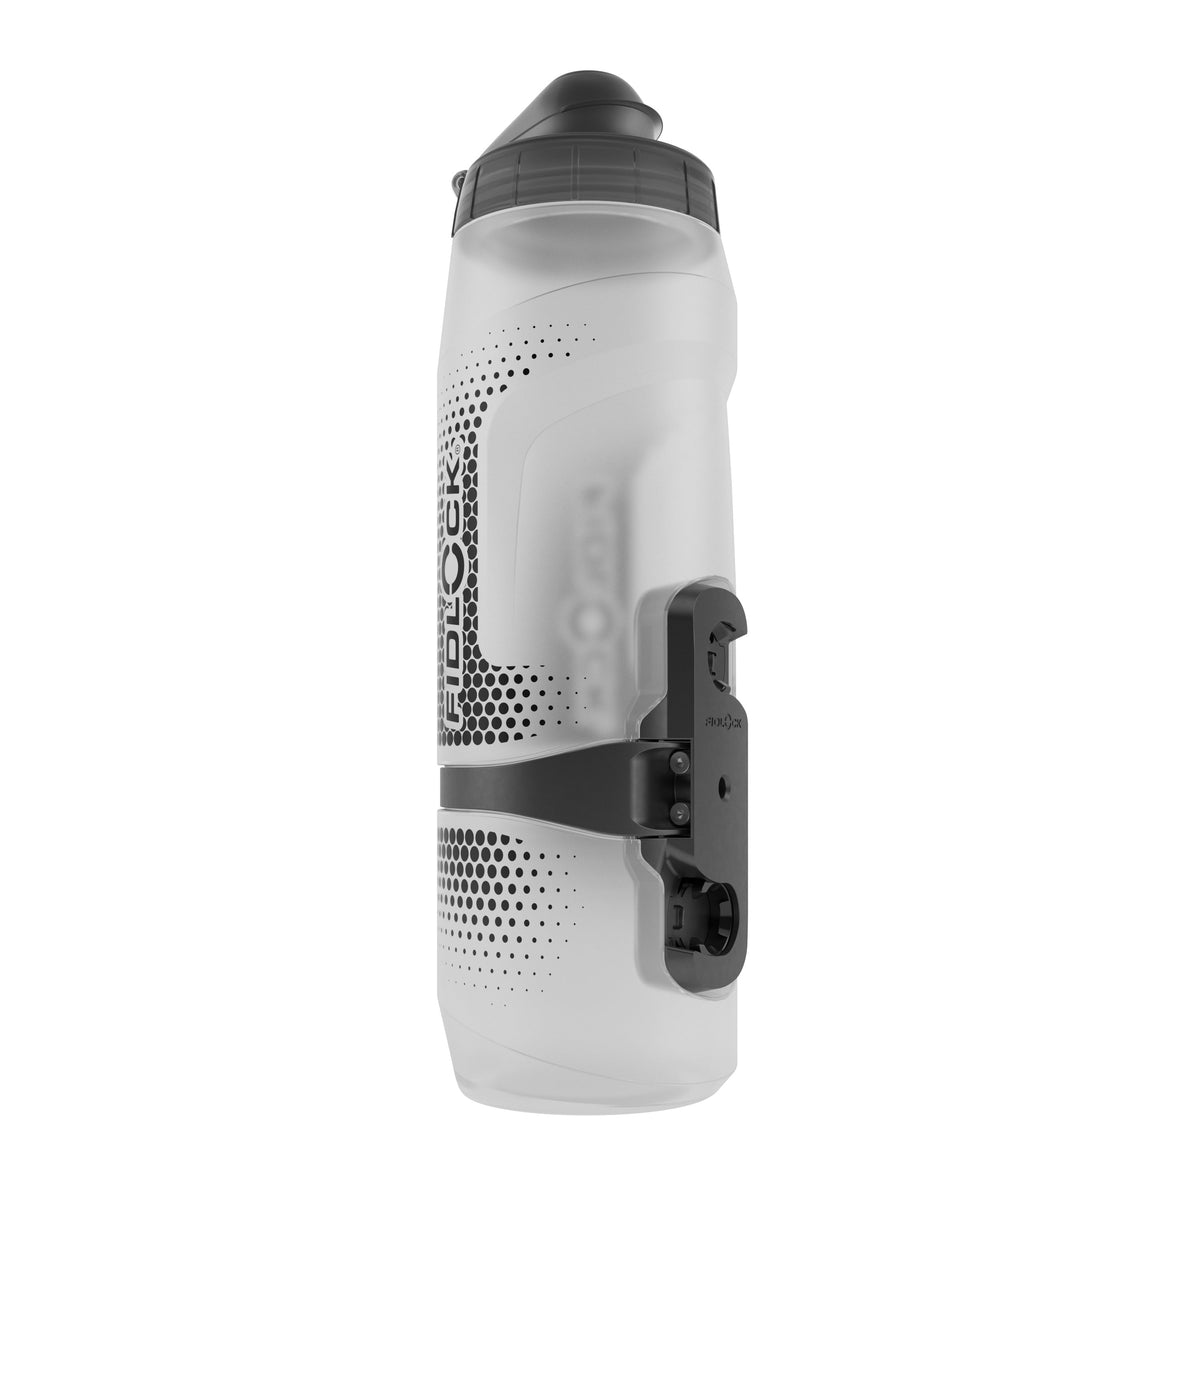 Fidlock BottleTwist Magnetic Water Bottle System